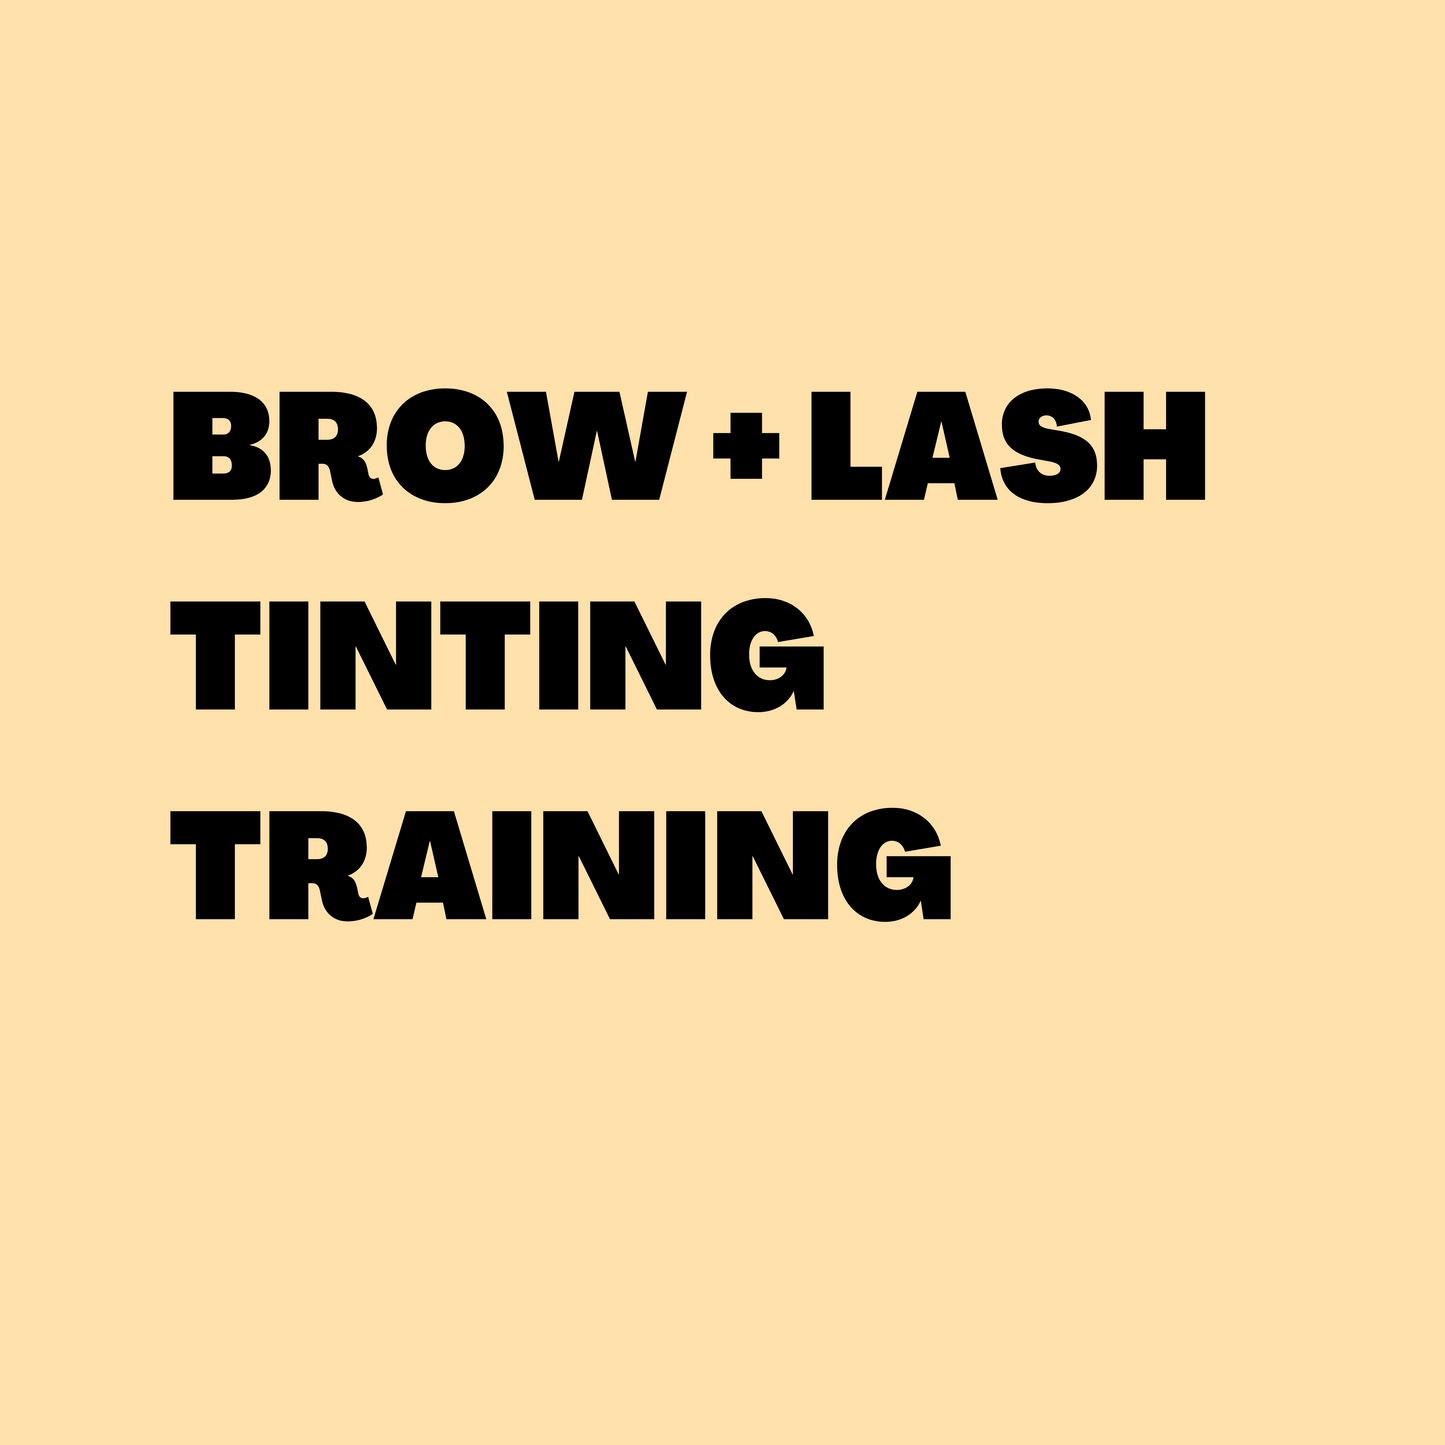 BROW + LASH TINT TRAINING